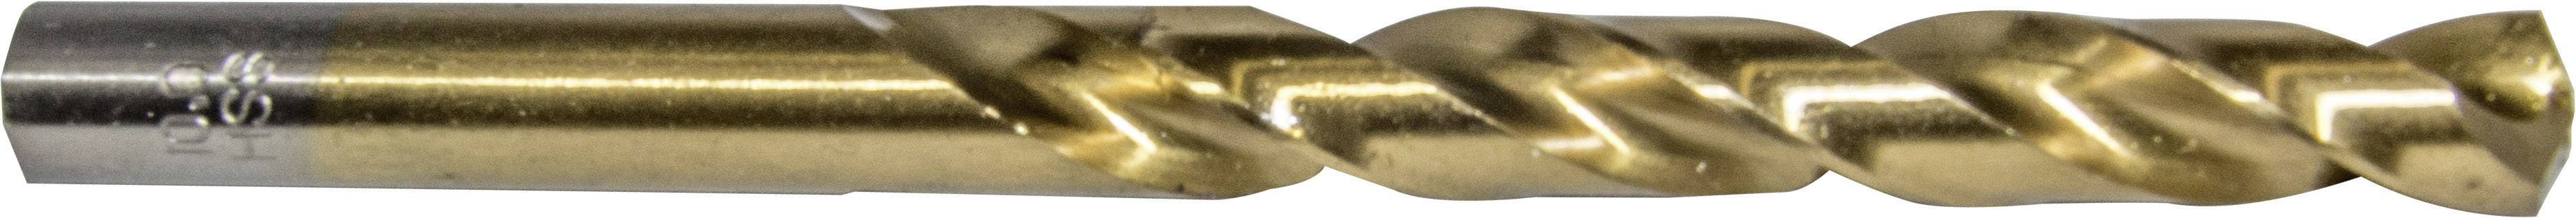 HELLER 29286 3 Metall-Spiralbohrer 1 Stück 3.2 mm Gesamtlänge 65 mm 10 St.